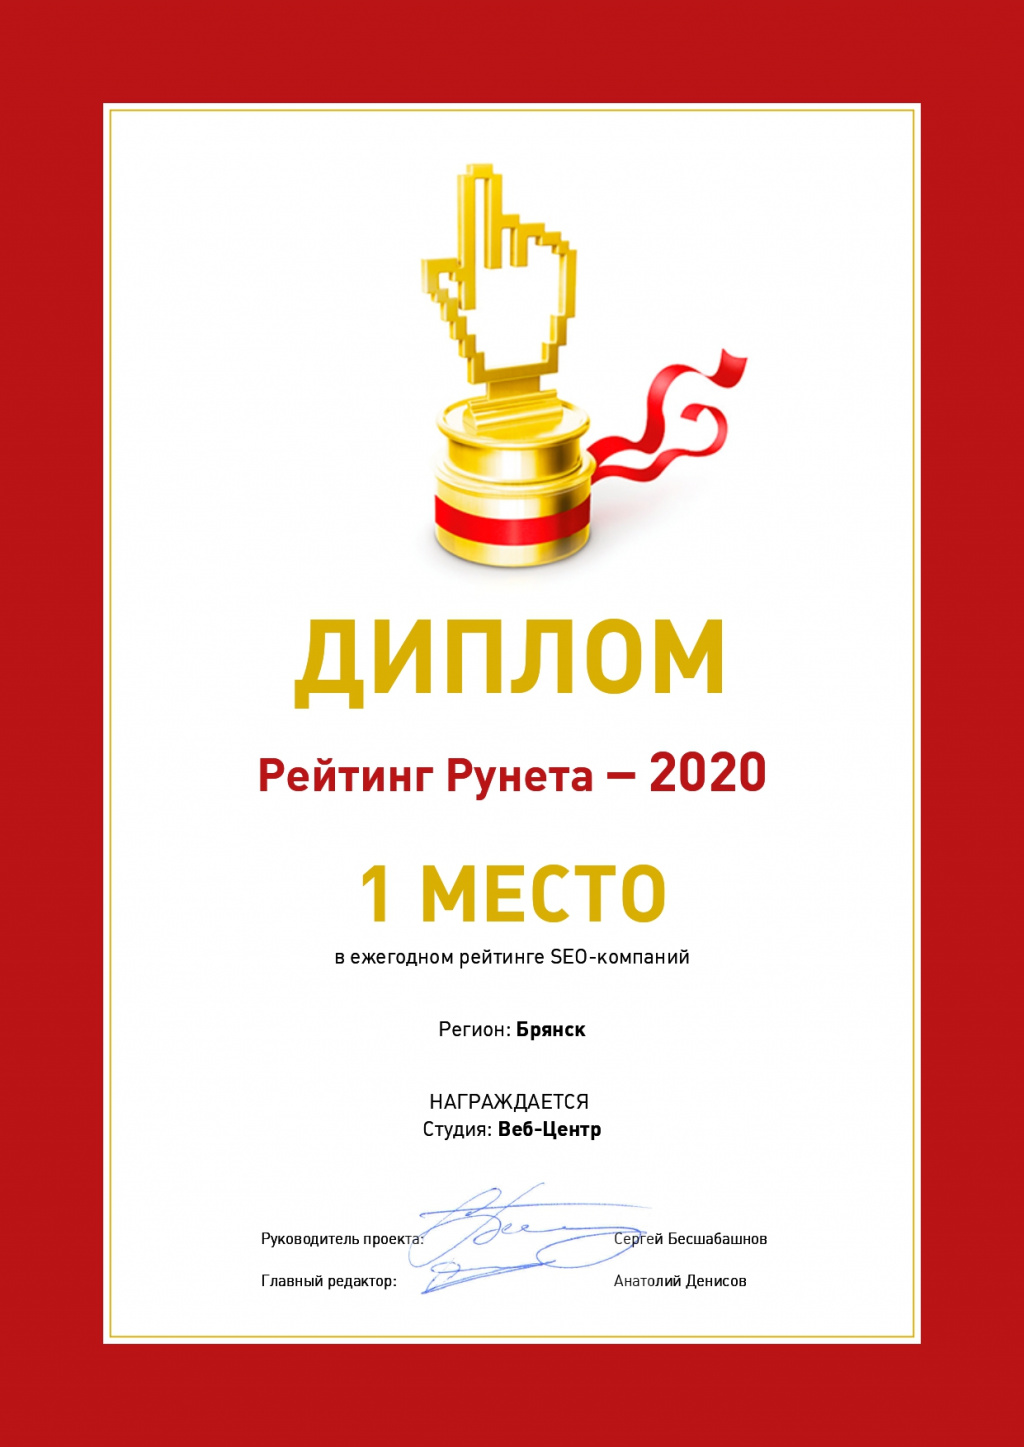 1 МЕСТО в ежегодном рейтинге SEO-компаний, регион Брянск